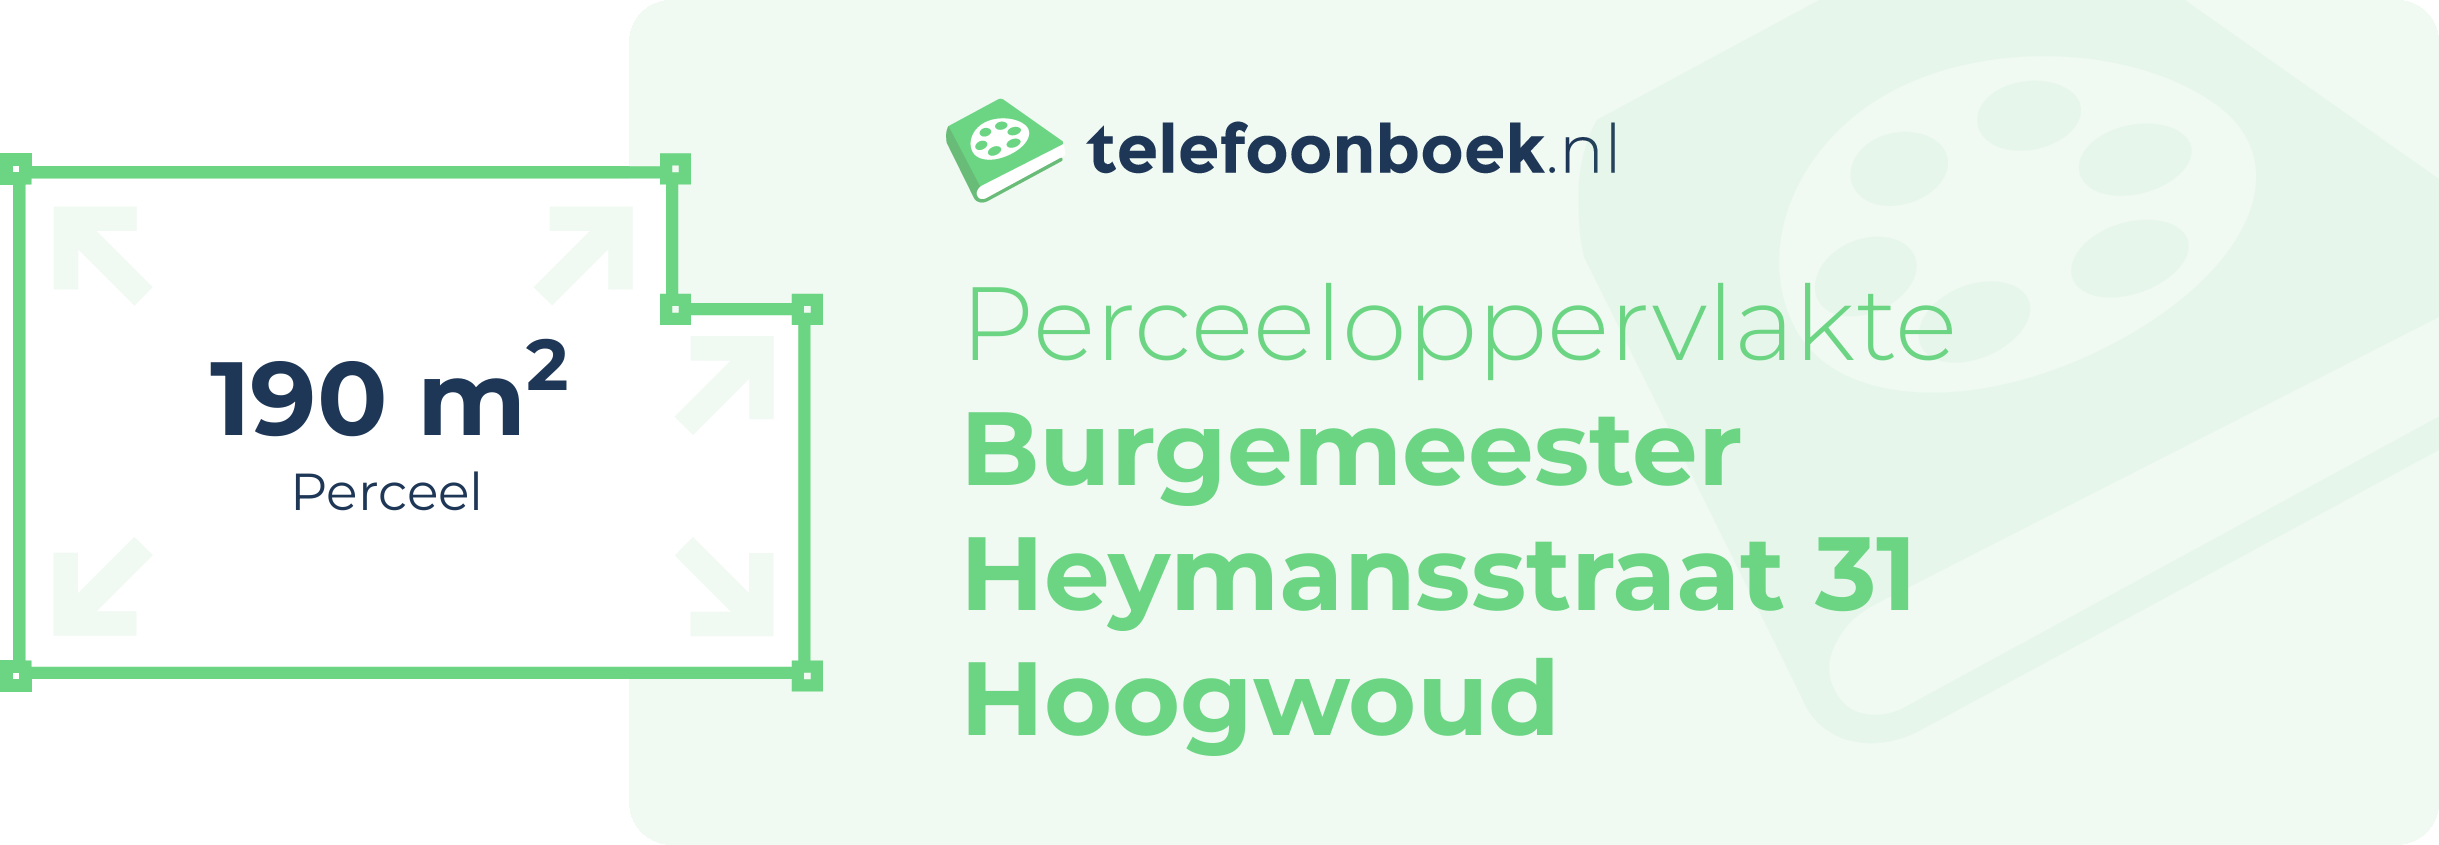 Perceeloppervlakte Burgemeester Heymansstraat 31 Hoogwoud